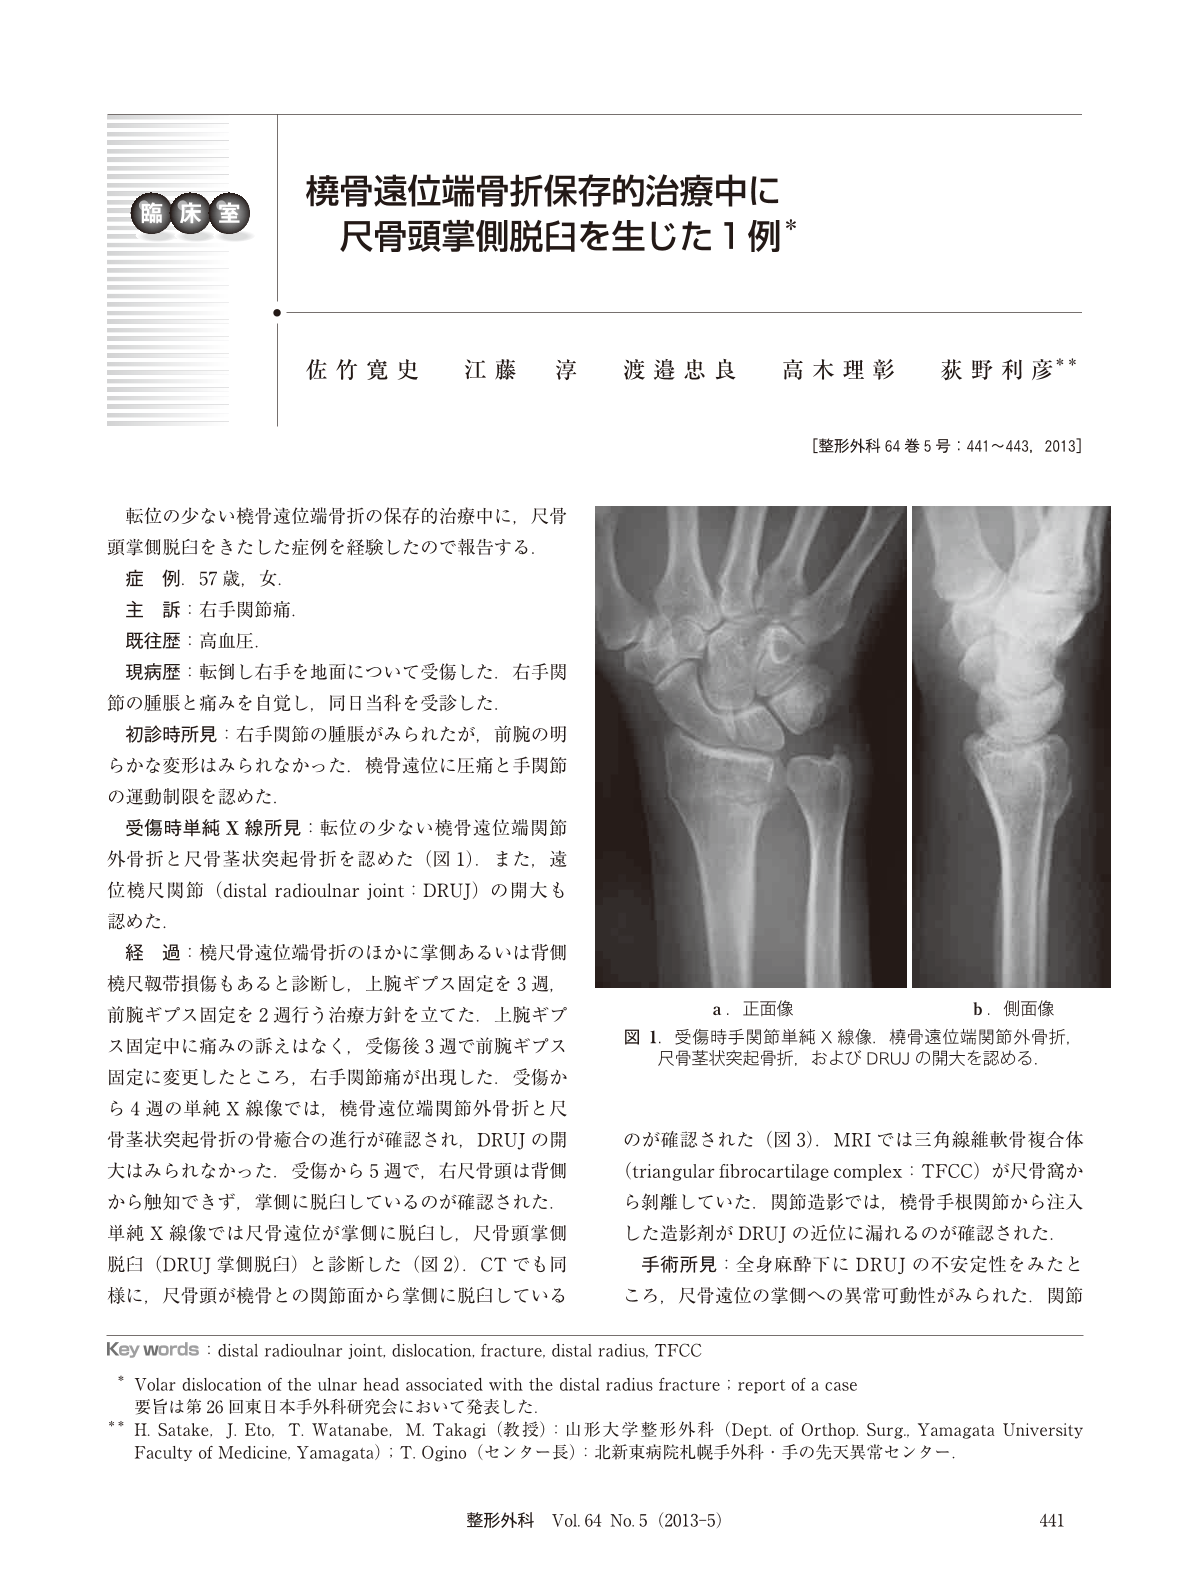 橈骨遠位端骨折保存的治療中に尺骨頭掌側脱臼を生じた1例 臨床雑誌整形外科 64巻5号 医書 Jp